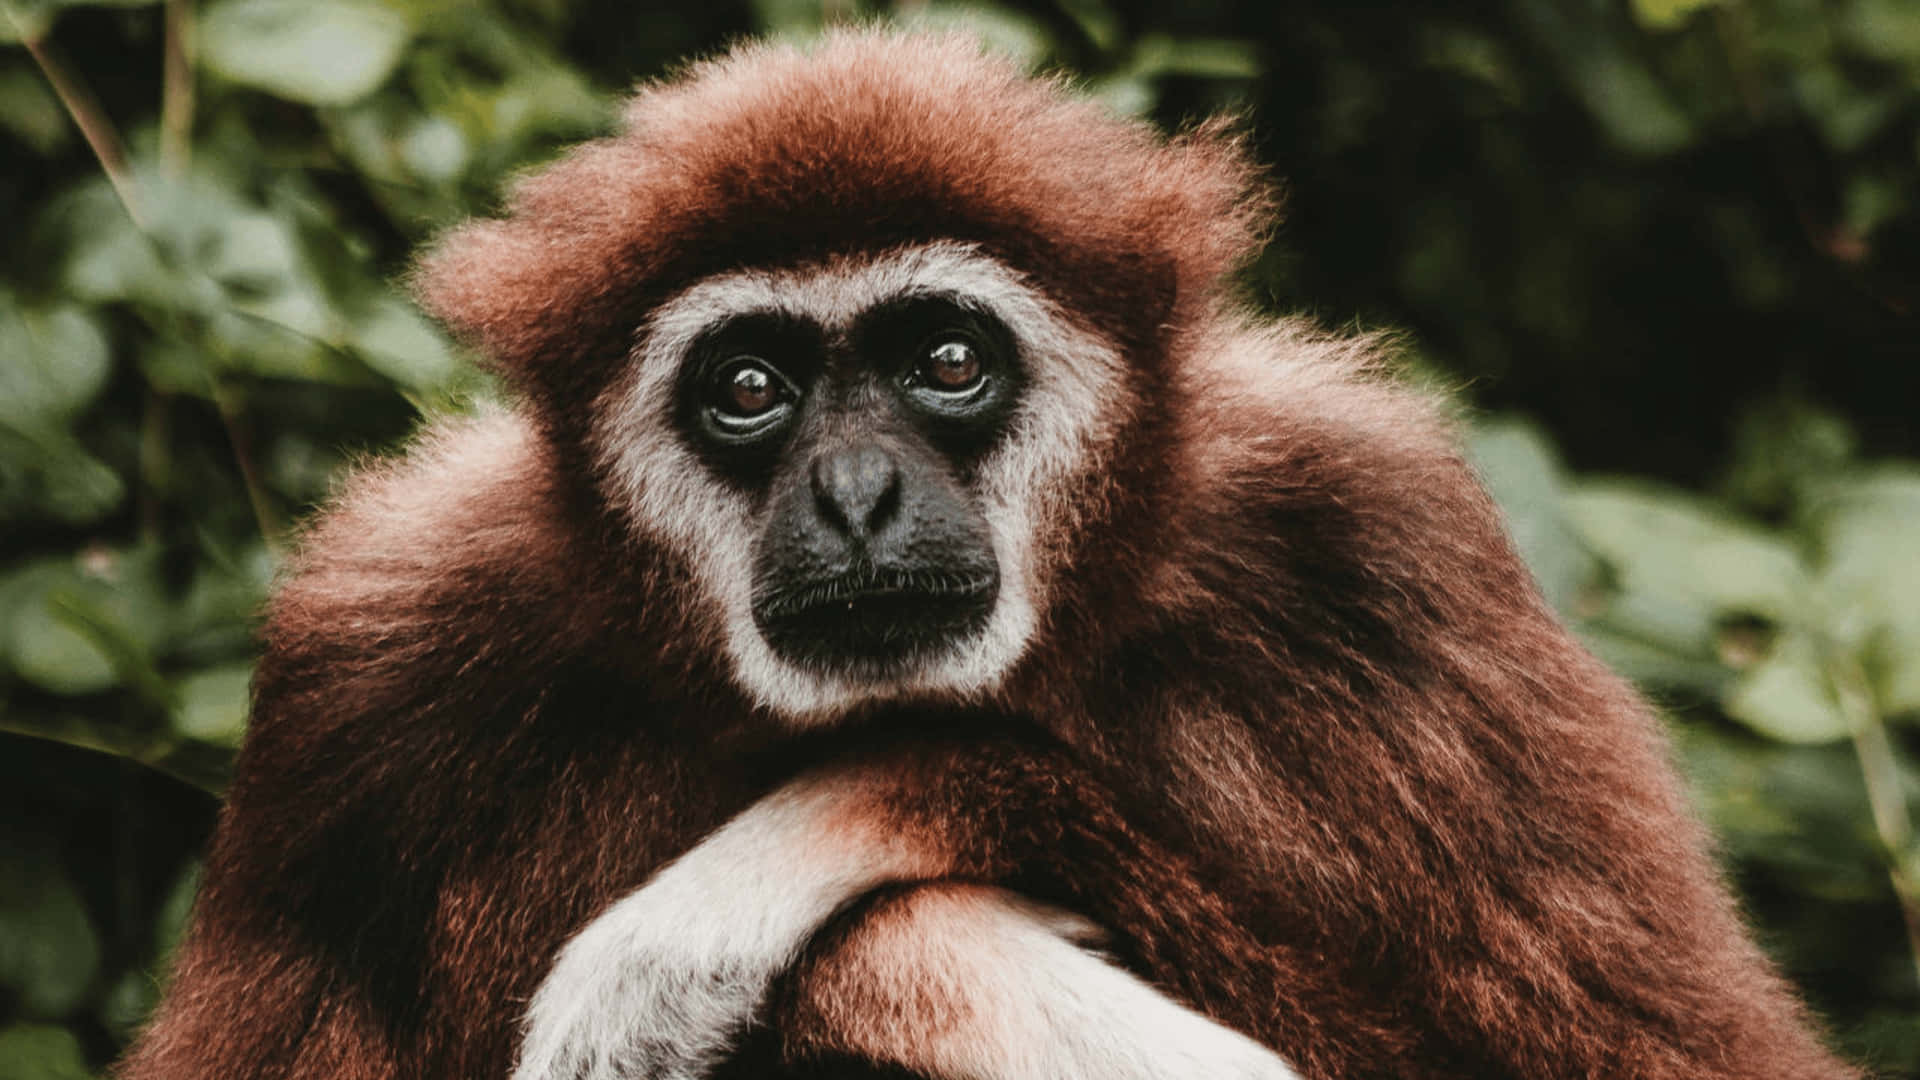 4kmörkbrun Gibbon Bakgrundsbild.